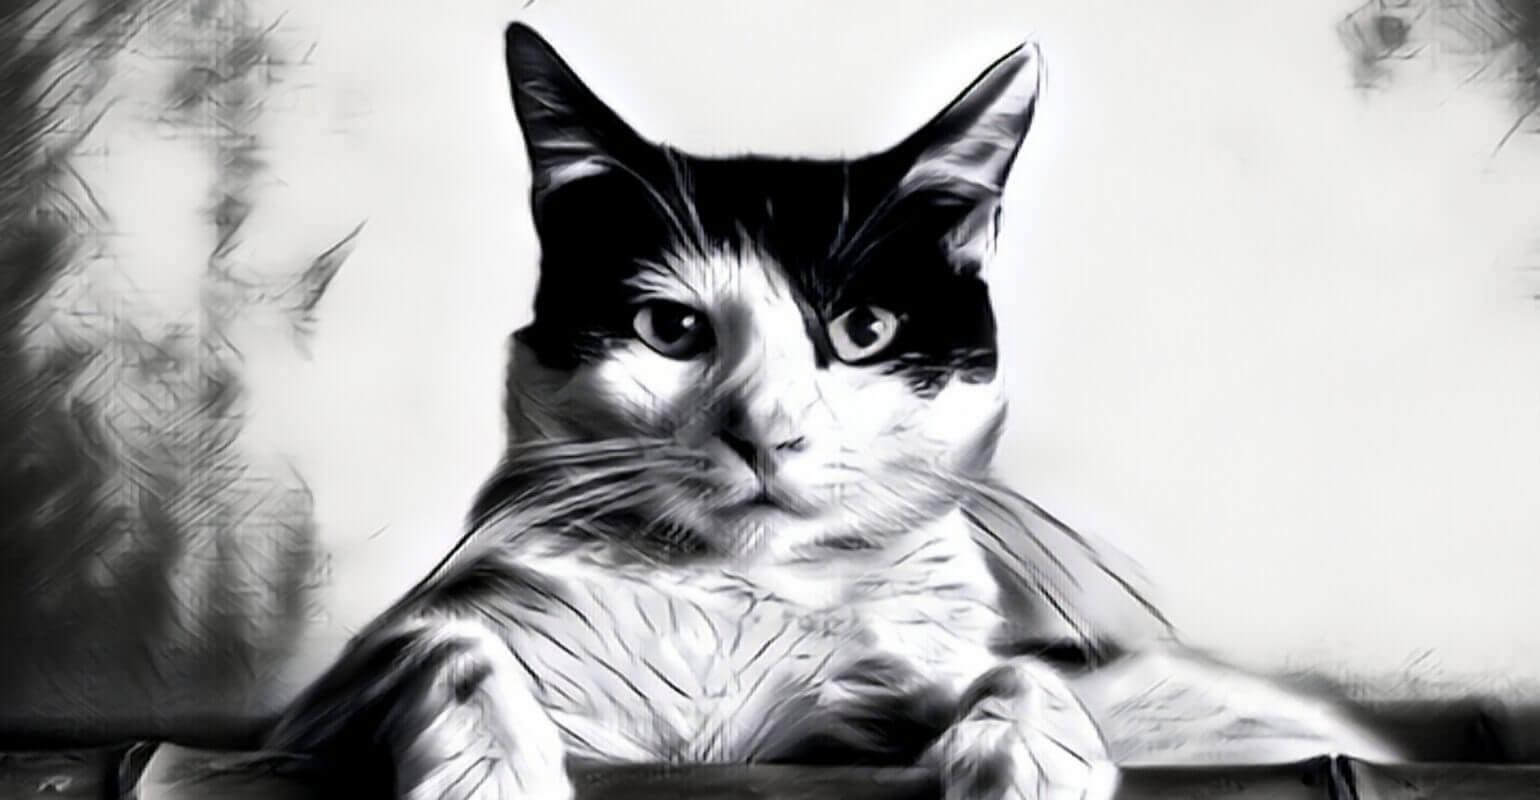 cat sketch photo